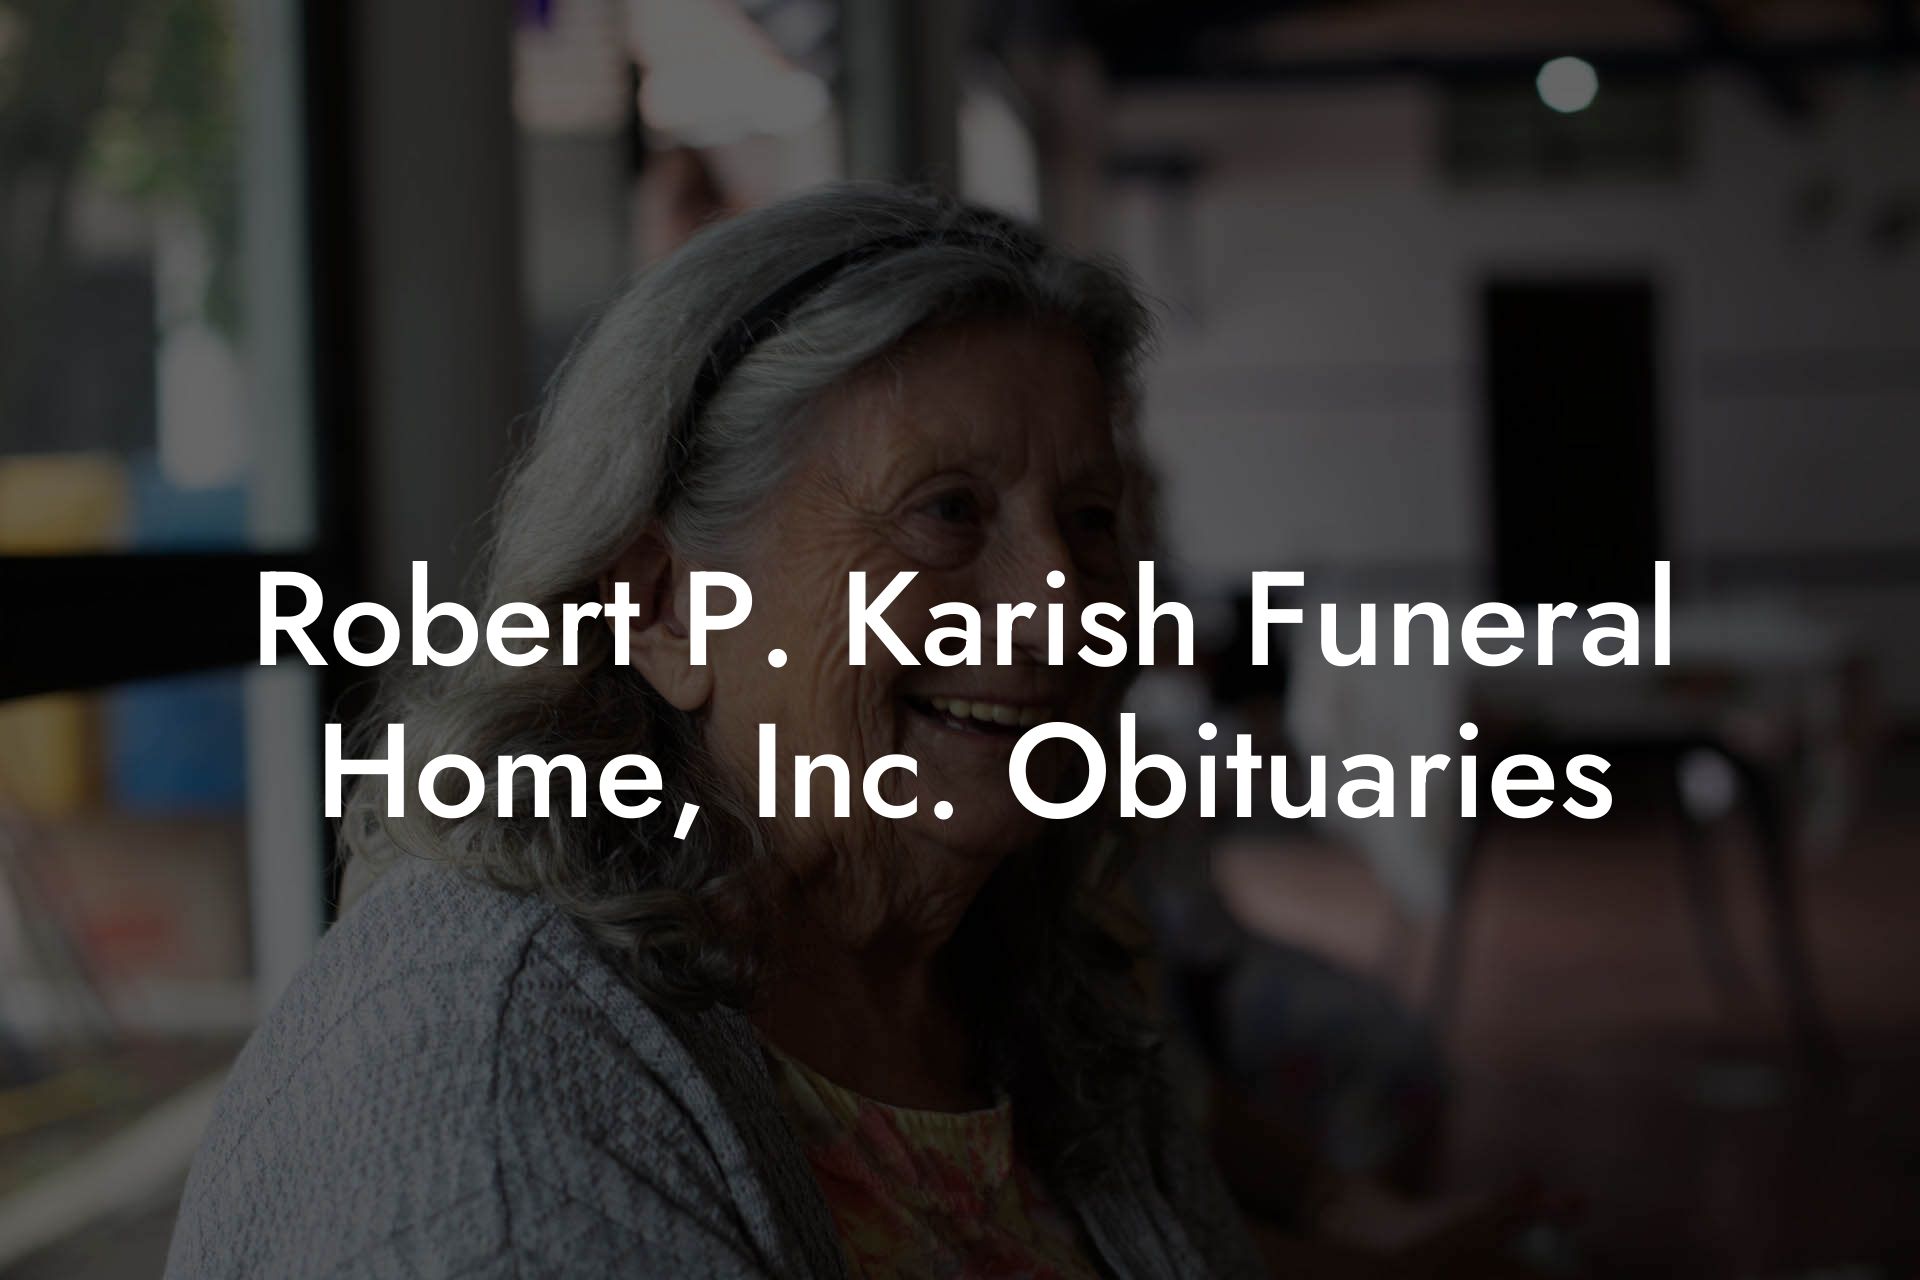 Robert P. Karish Funeral Home, Inc. Obituaries